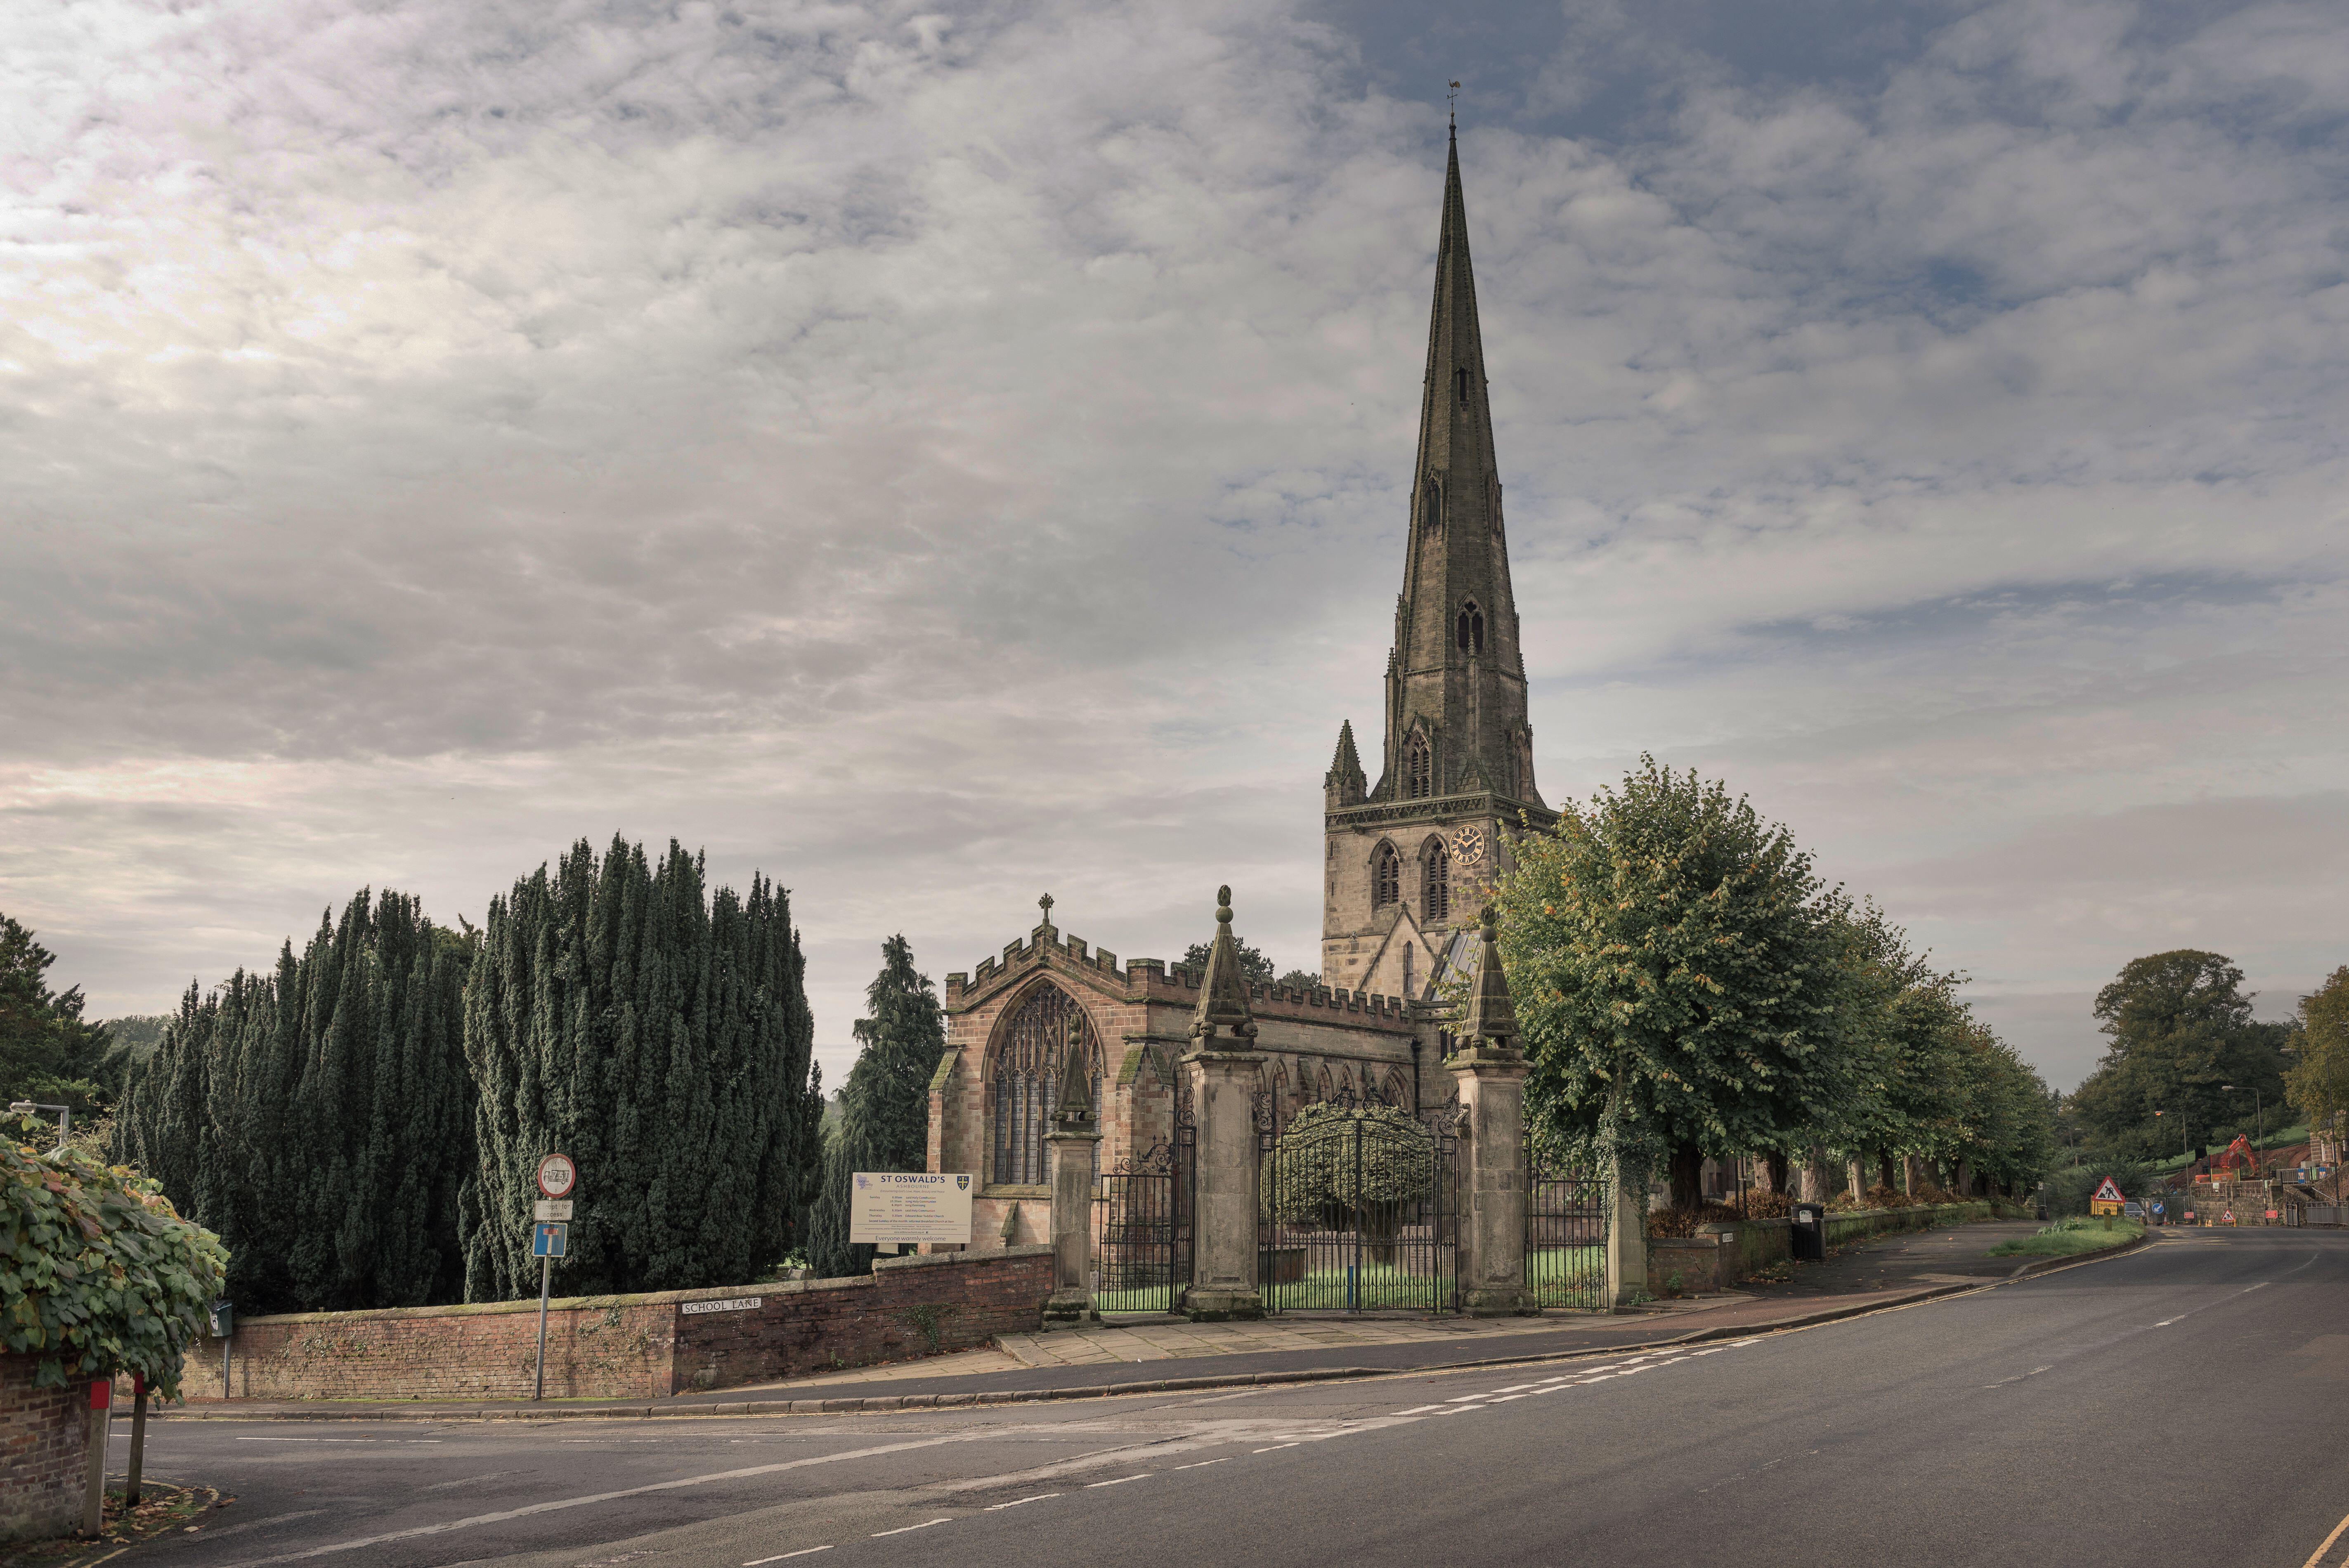 Die Kirche St. Oswald wurde von George Eliot als die schönste Kirche Englands bezeichnet